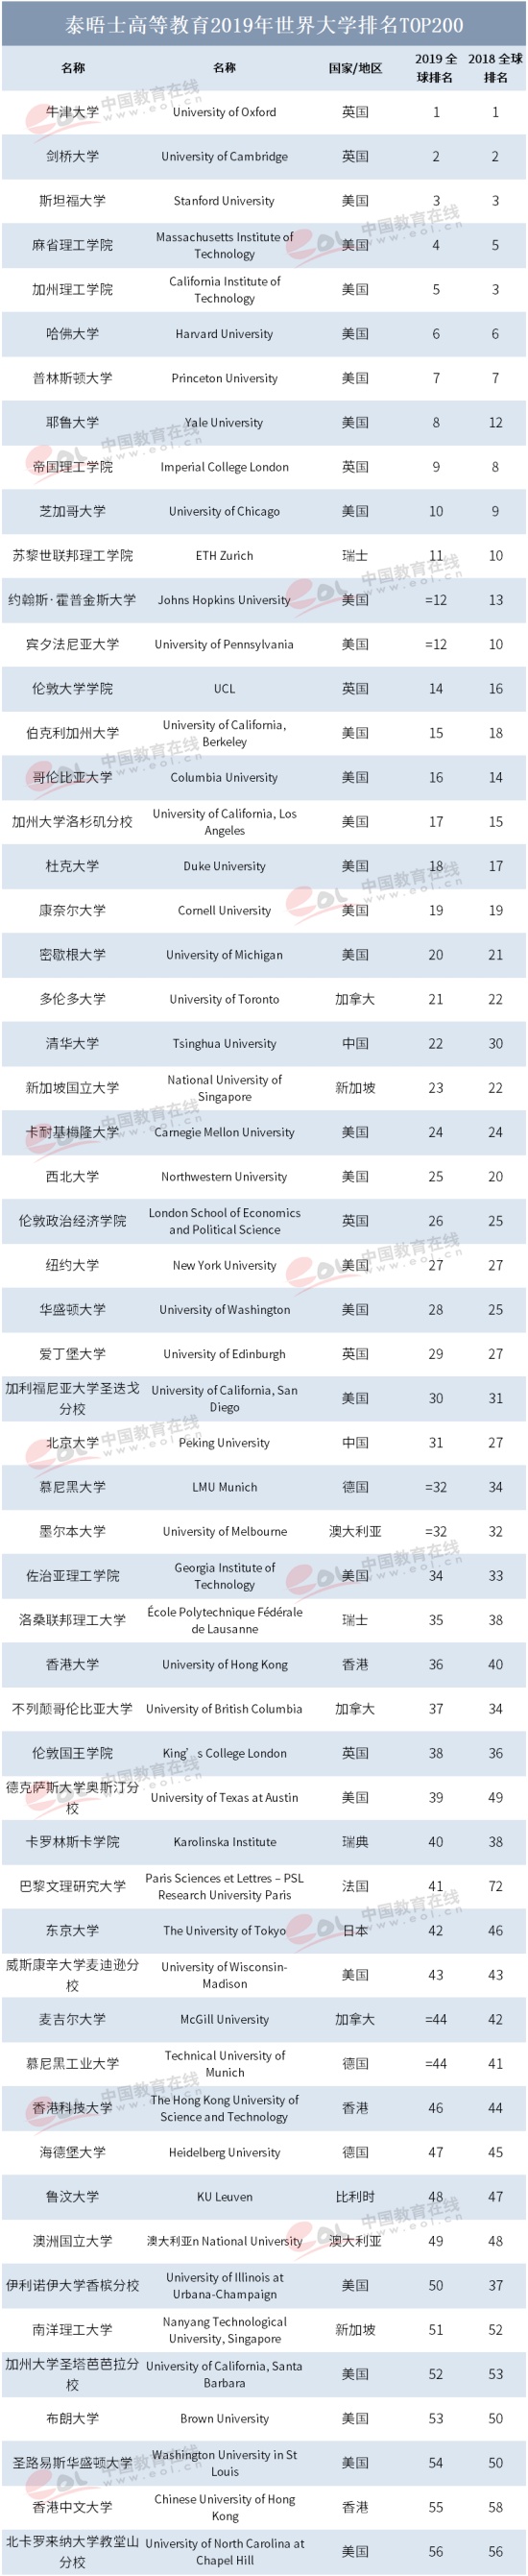 2019世界大学排名